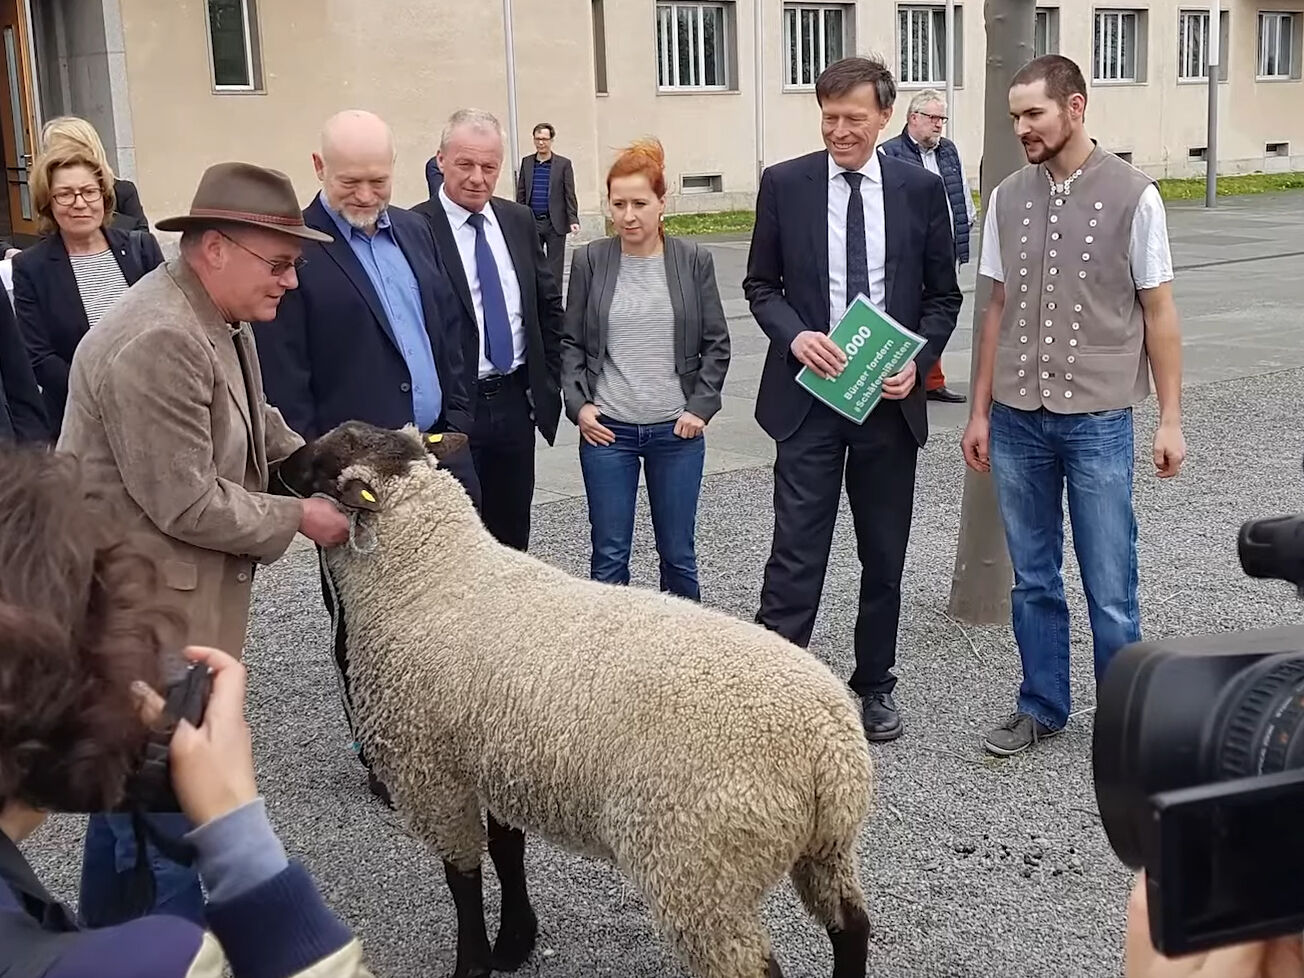 Schäfer mit Schaf bei der Übergabe einer Petition an den landtagspräsidenten und Abgeordnete des Sächsischen Landtags